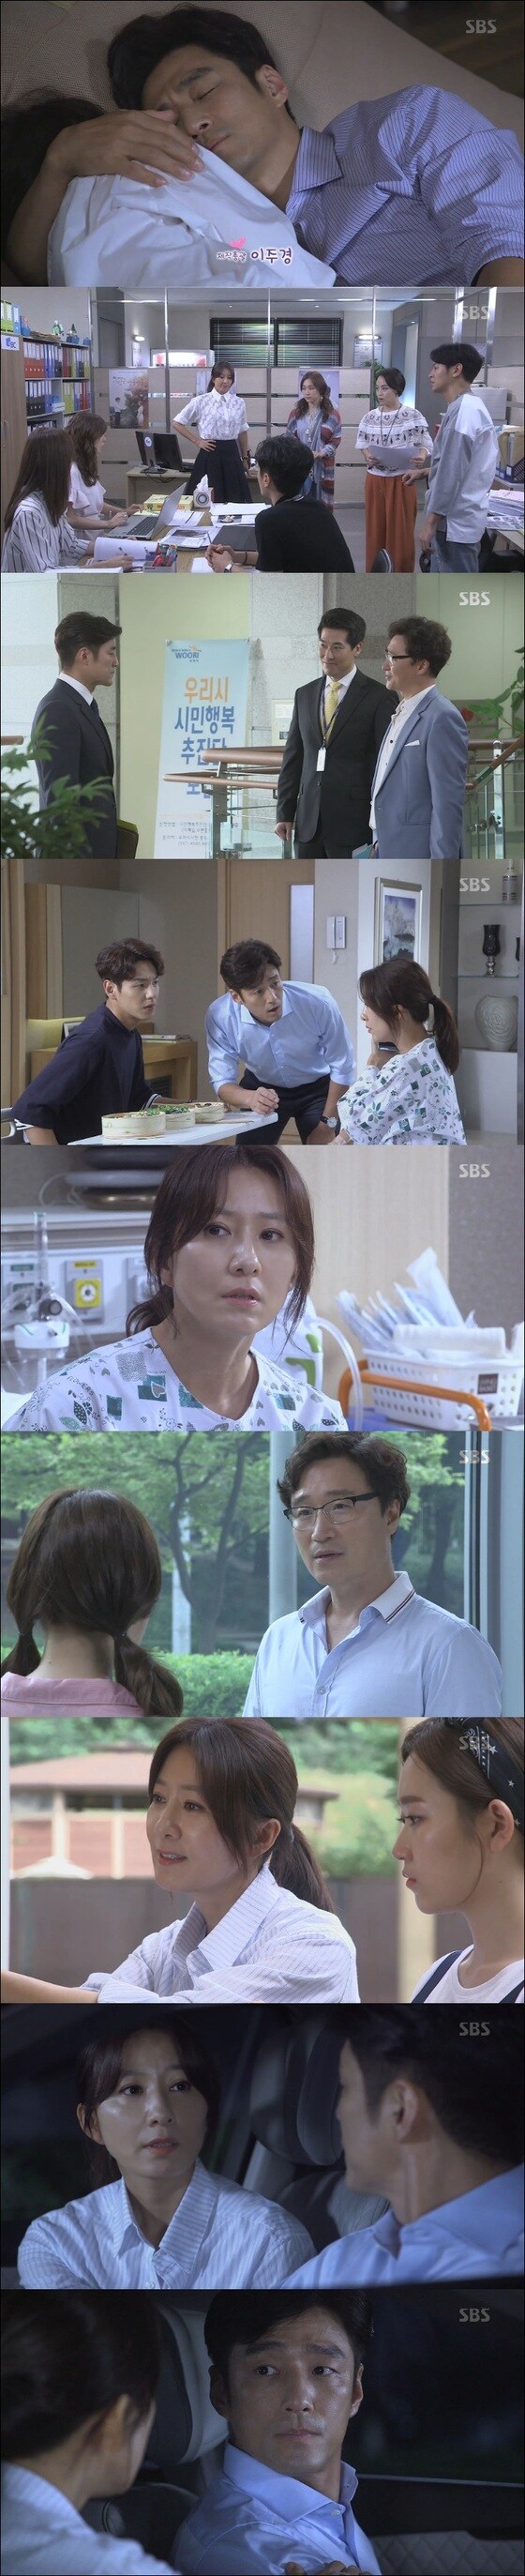 김희애, 지진희가 과거 비슷한 상처를 가진 것을 서로 알게 됐다. © News1star / SBS '끝에서 두 번째 사랑' 캡처